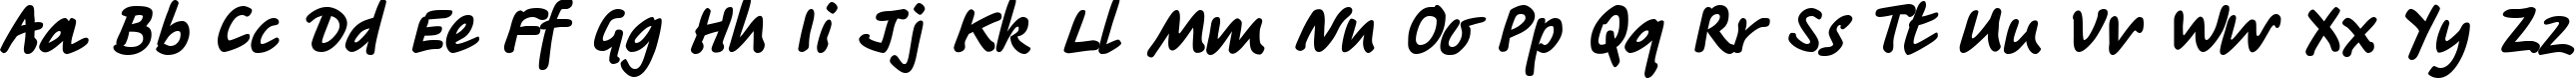 Пример написания английского алфавита шрифтом Tagir DP Normal